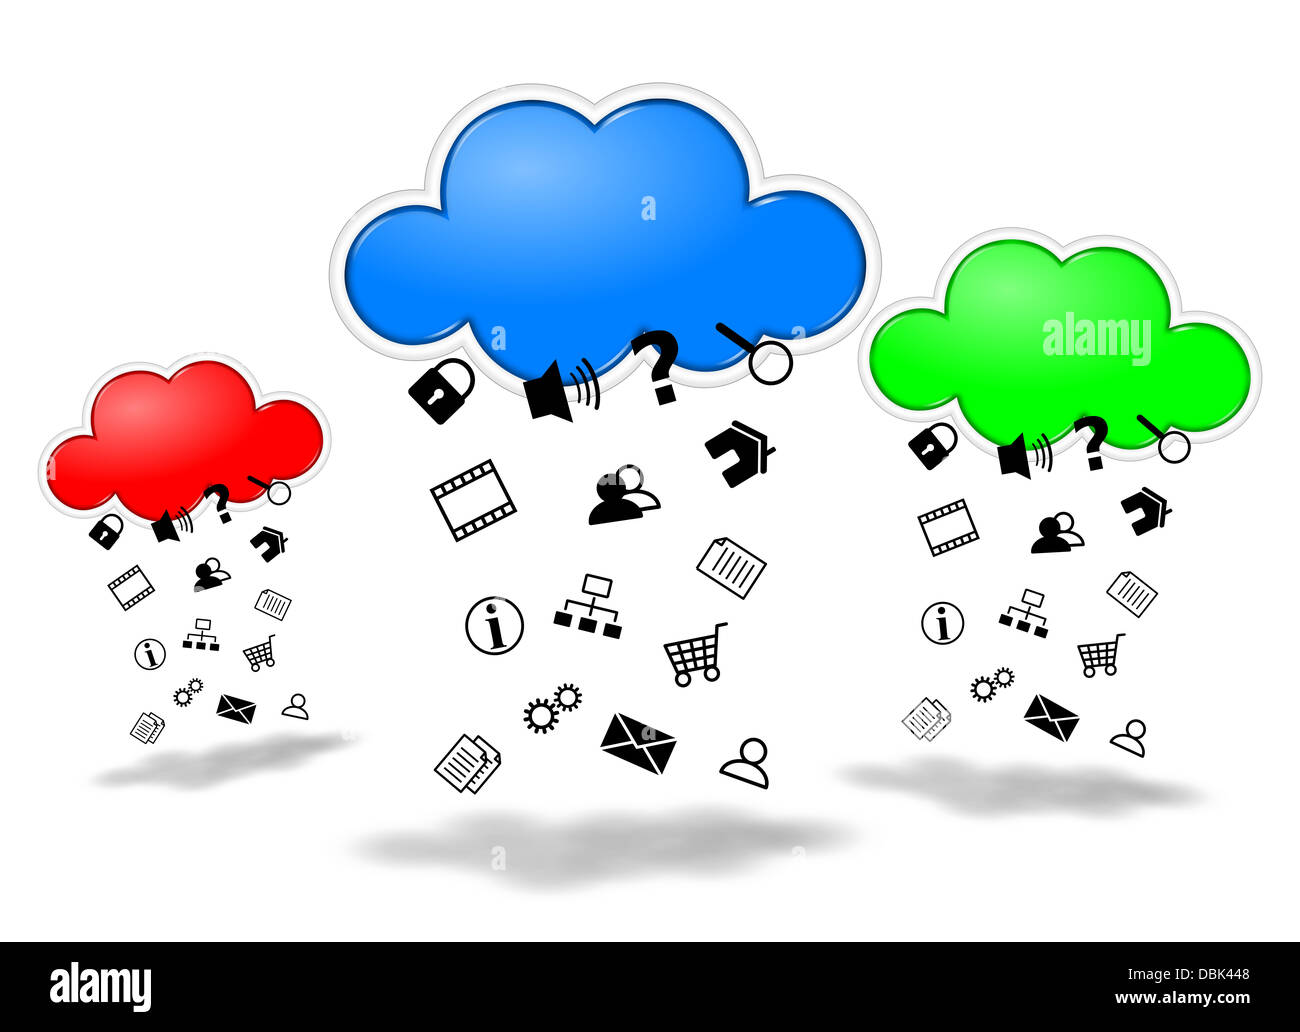 Sammeln von Daten-Cloud-computing-Wettbewerb Konzept Abbildung Stockfoto